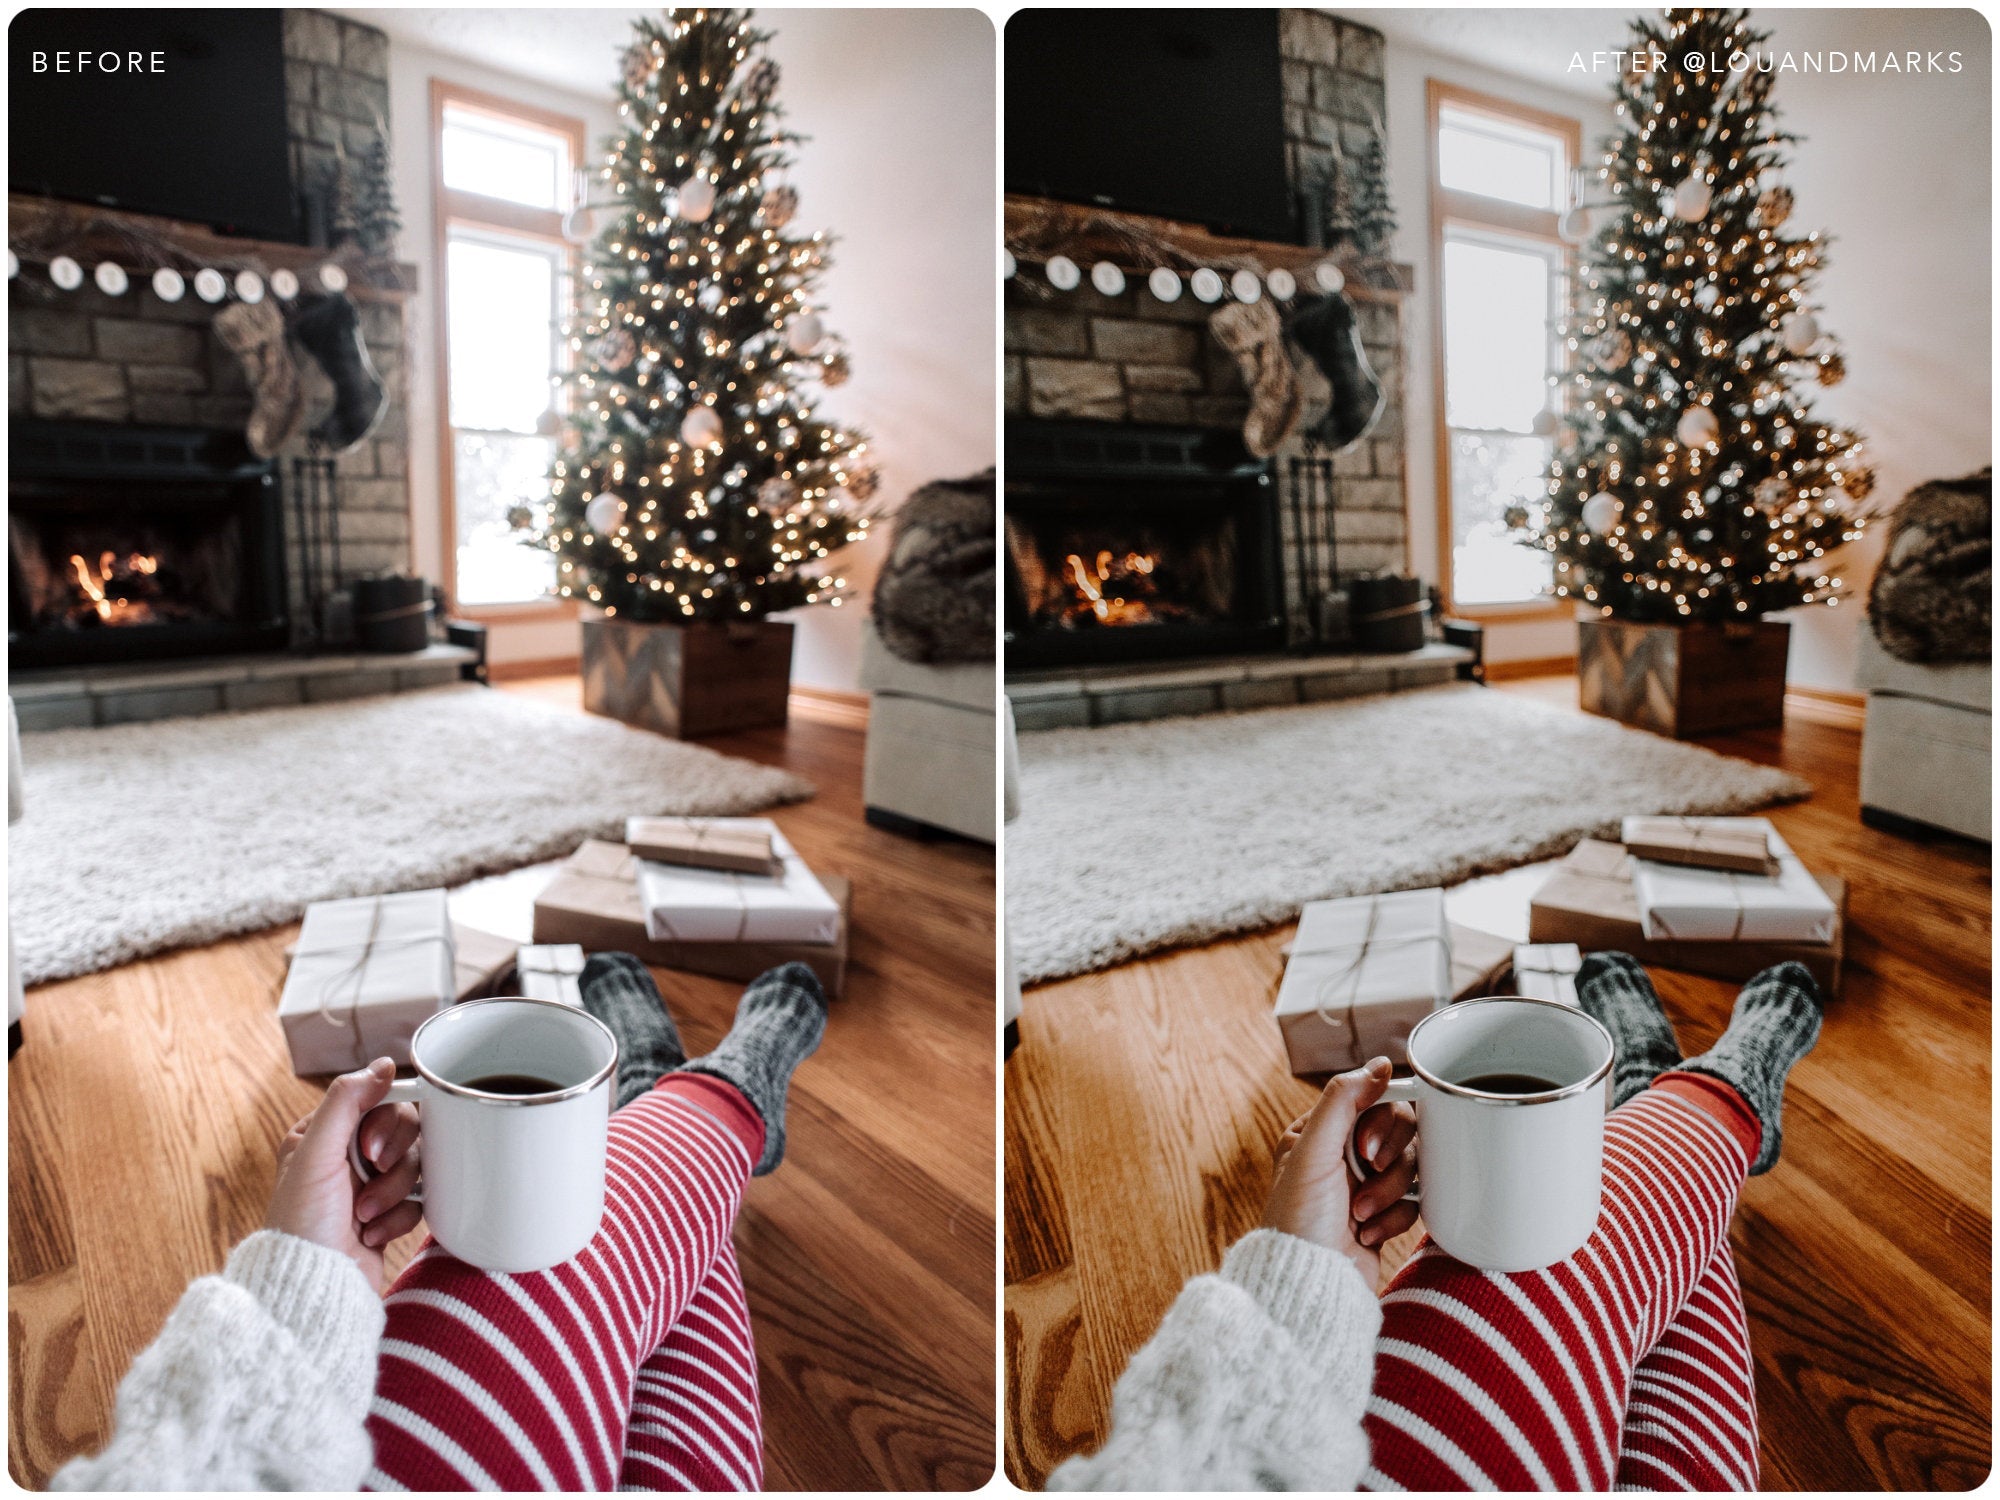 Rich Holiday Presets, Photo presets for Lightroom Mobile, Light Mobile Presets for blogger Instagram Christmas by Lou Marks Lightroom Preset